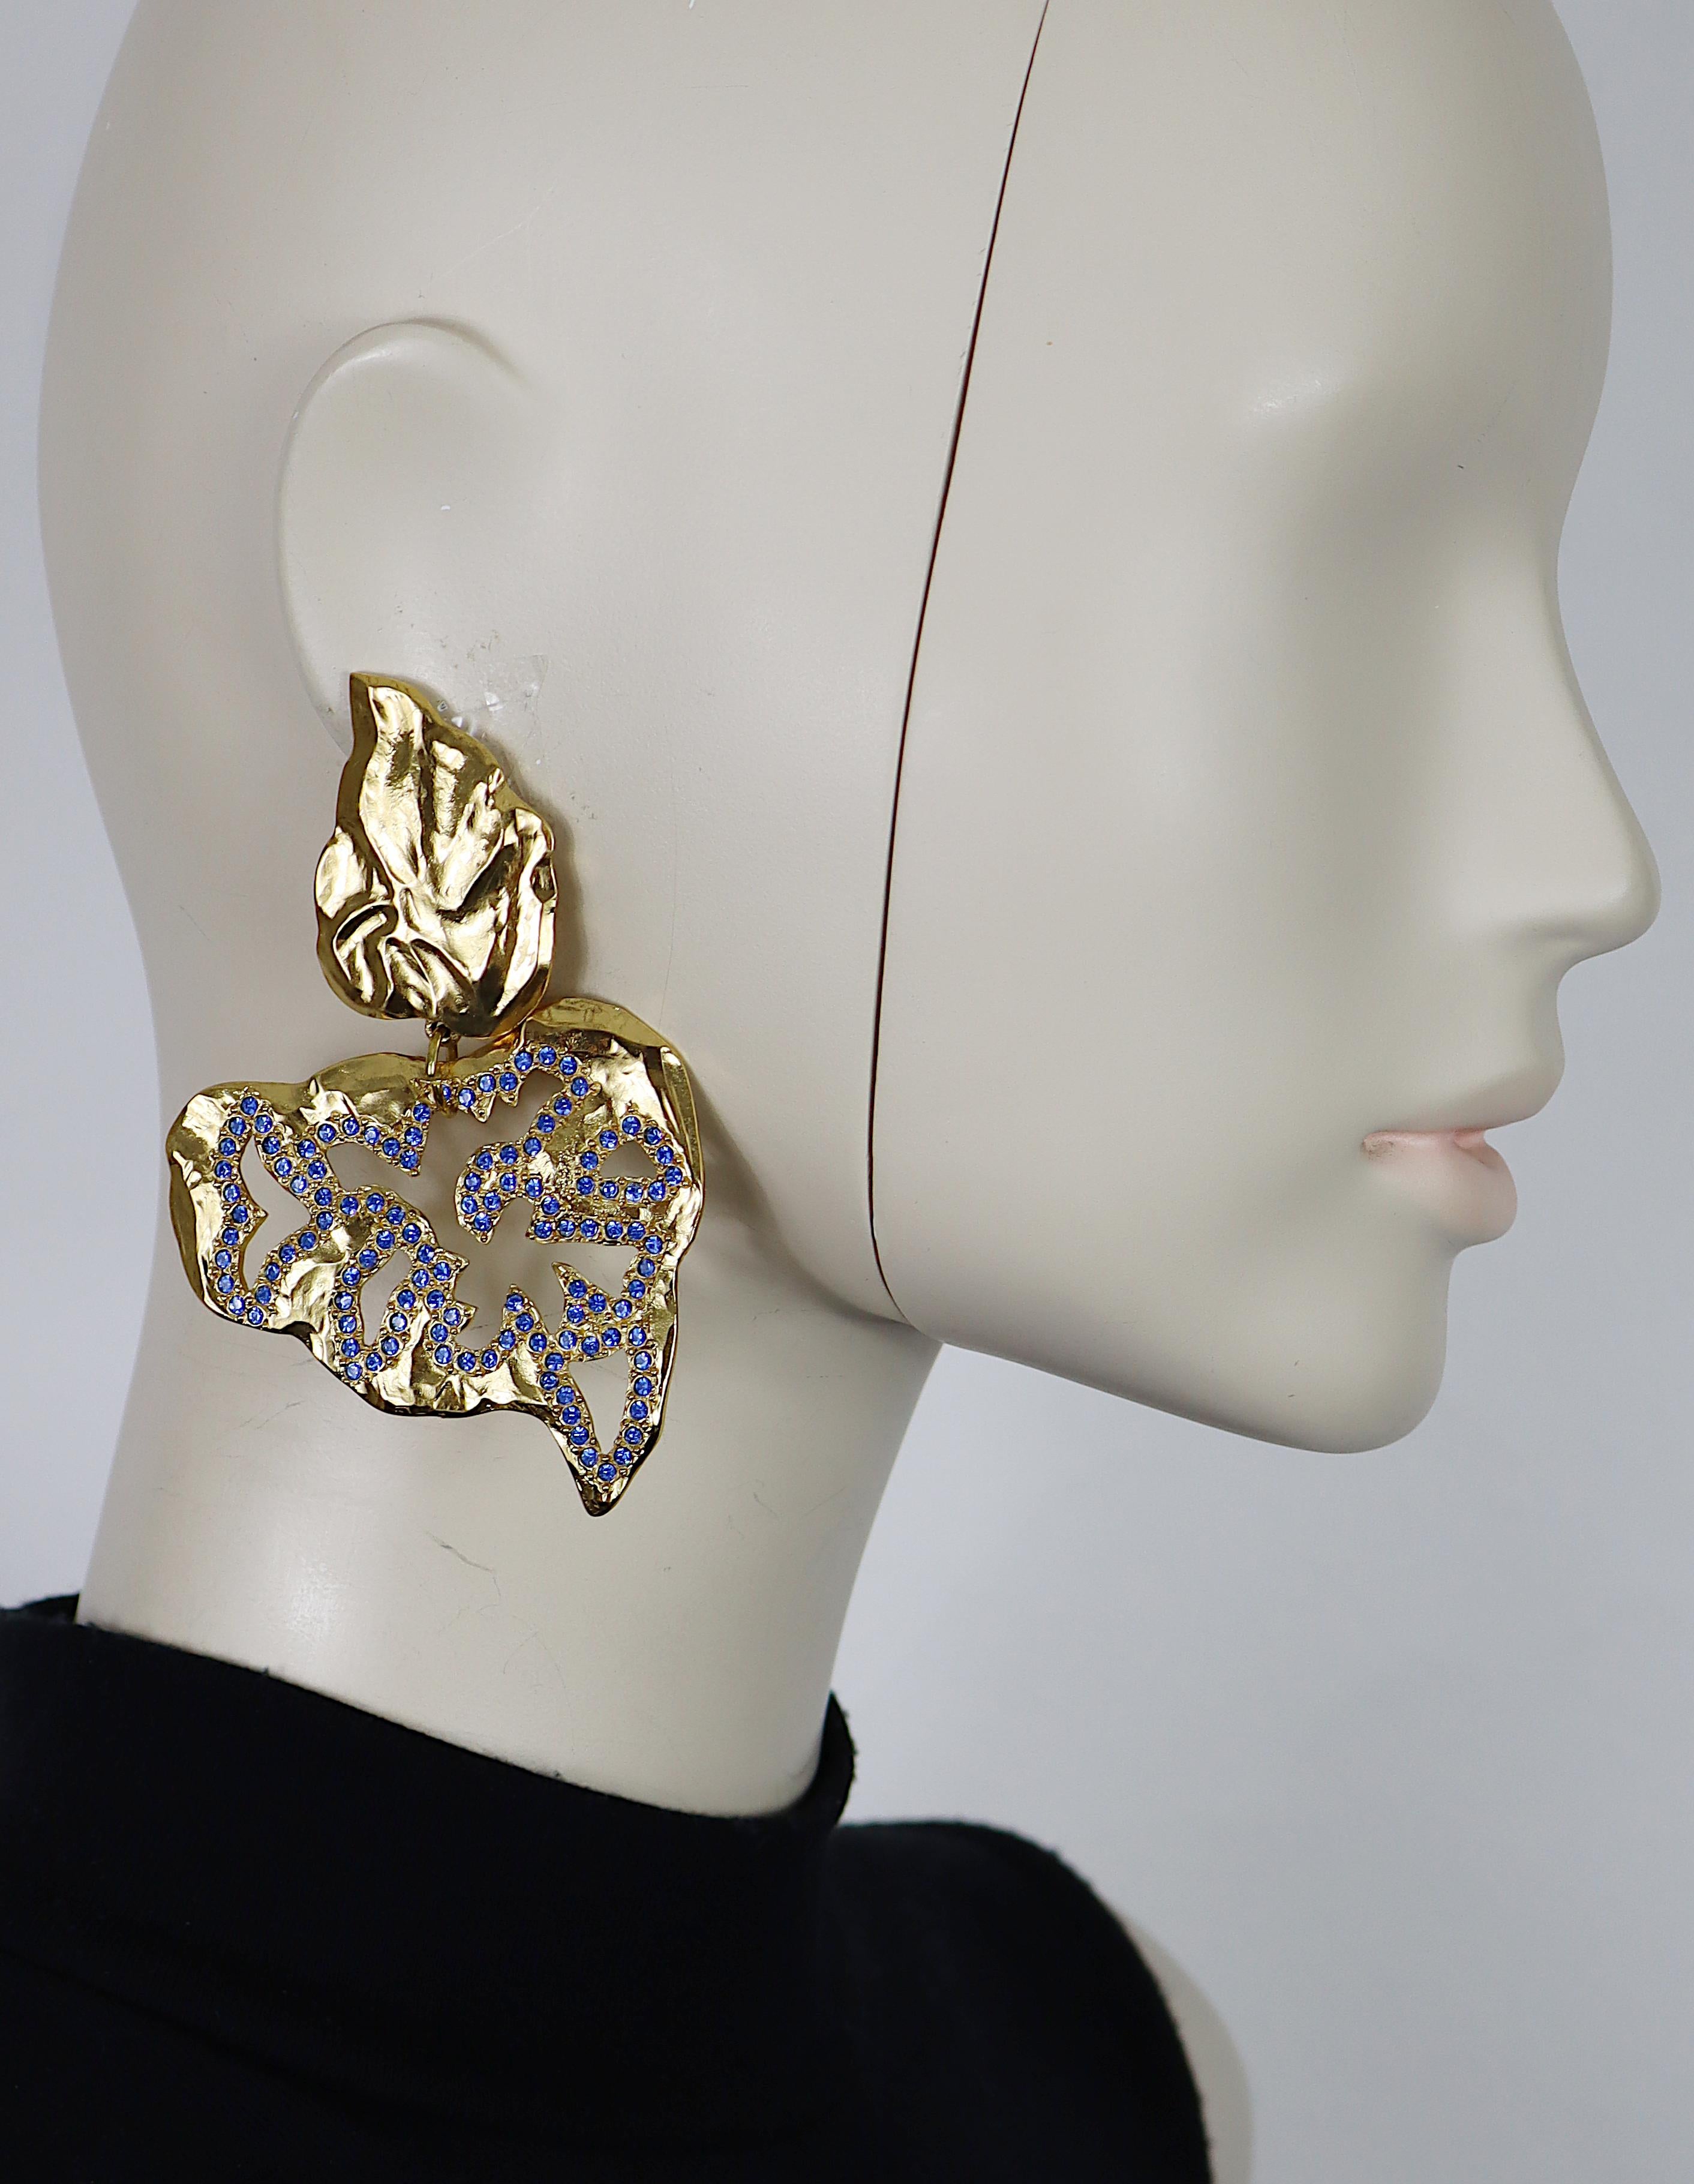 YVES SAINT LAURENT Vintage-Ohrringe in massivem, strukturiertem Goldton, durchbrochene Ohrringe (Clip-on), verziert mit blauen Kristallen.

Geprägtes YSL Made in France.

Ungefähre Maße: max. Höhe ca. 9,5 cm (3,74 Zoll) / max. Breite ca. 6 cm (2,36